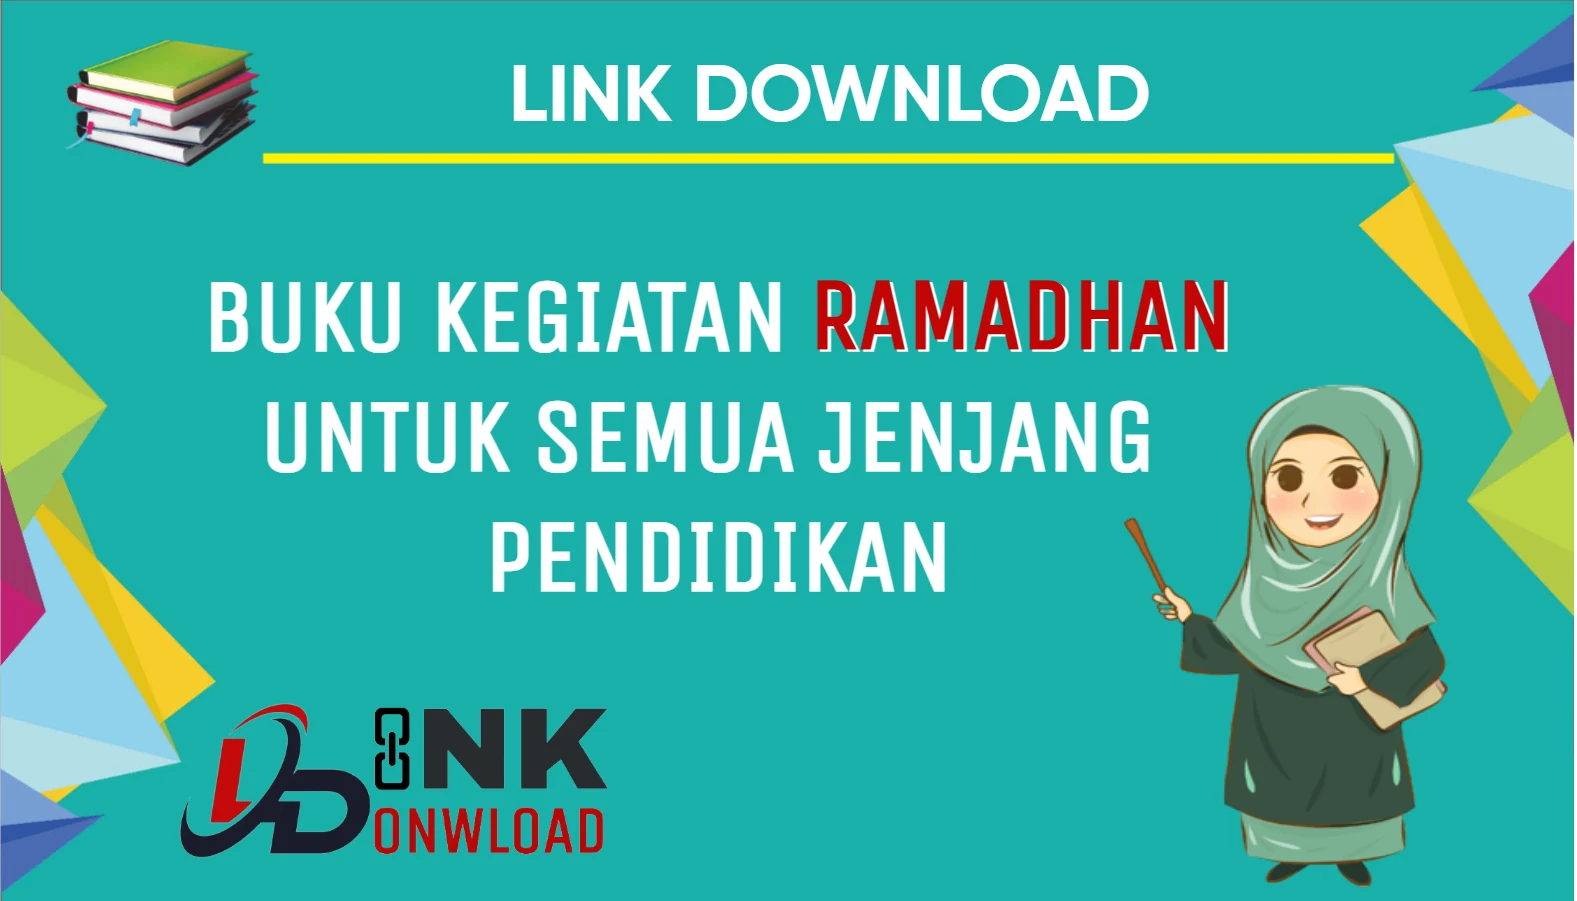 Link Download Buku Kegiatan Ramadhan untuk Semua Jenjang Pendidikan